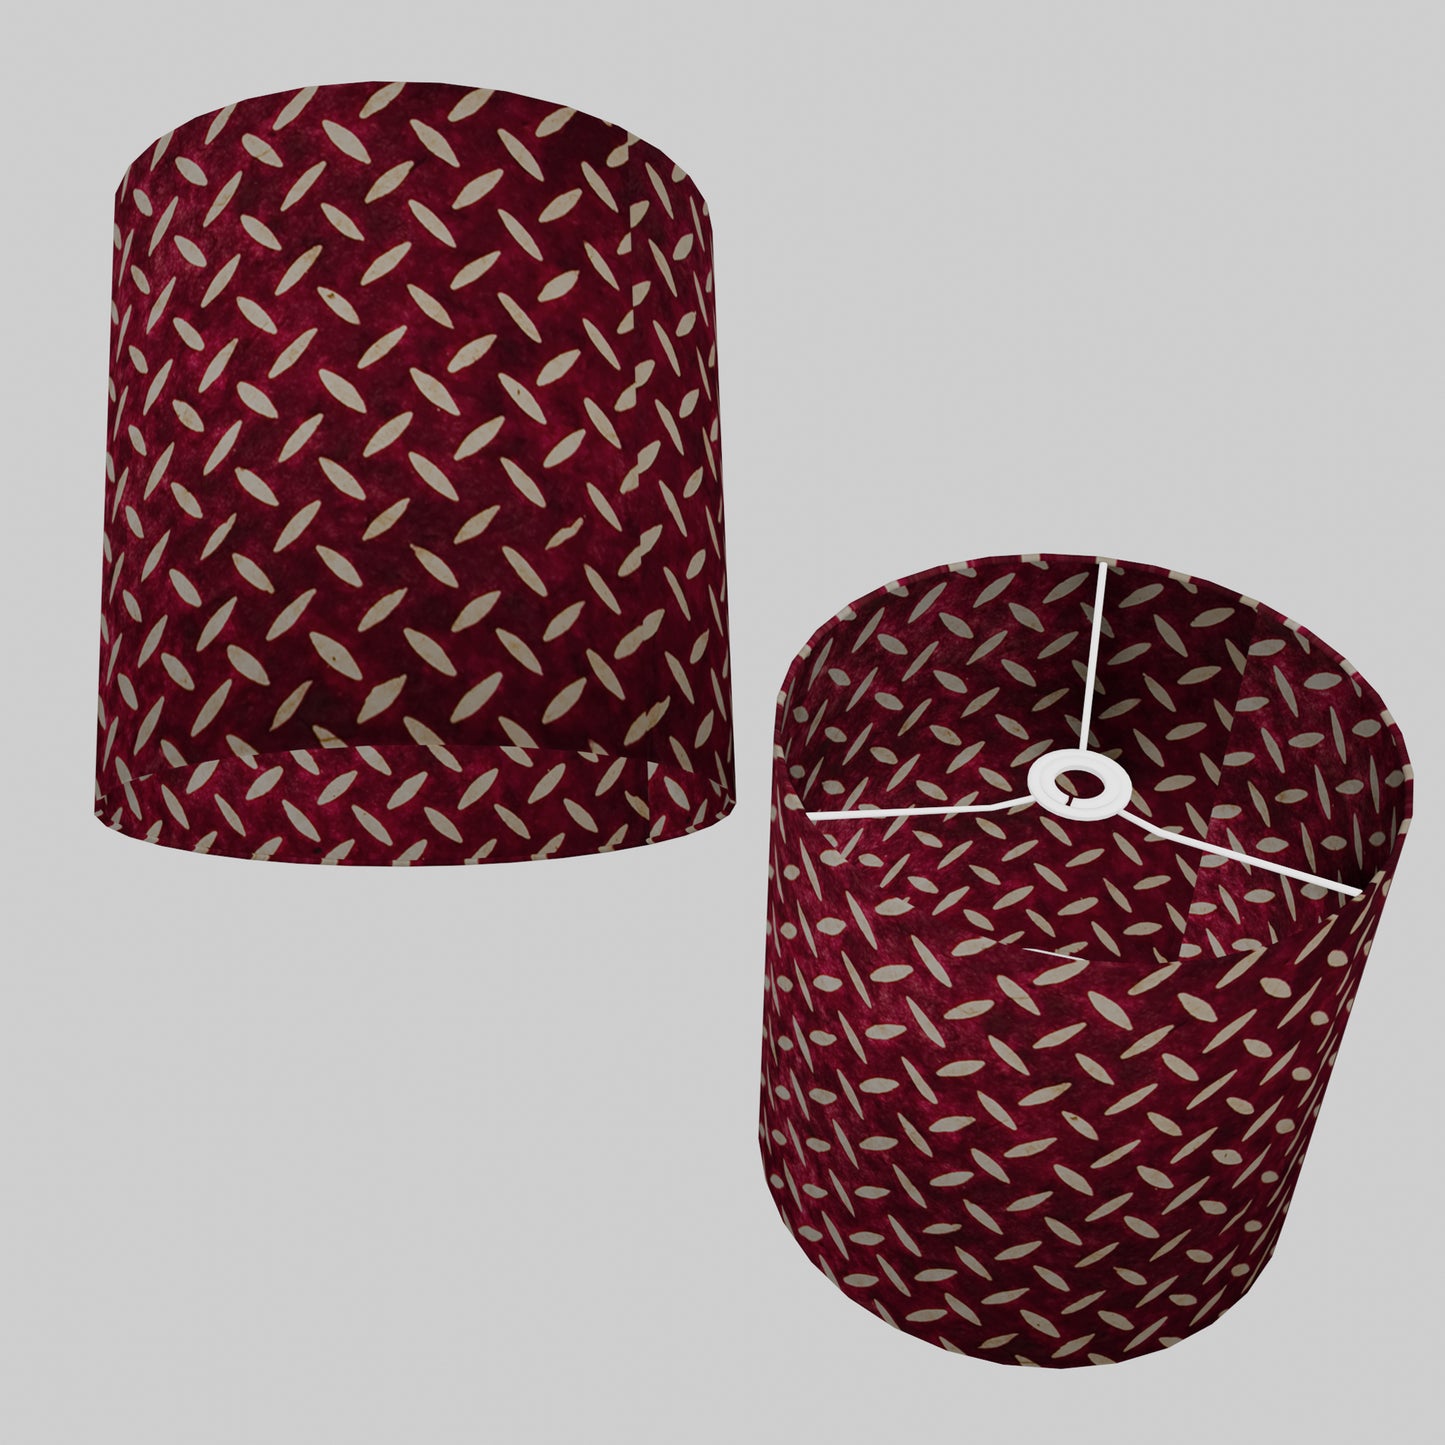 Drum Lamp Shade - P14 - Batik Tread Plate Cranberry, 30cm(d) x 30cm(h)